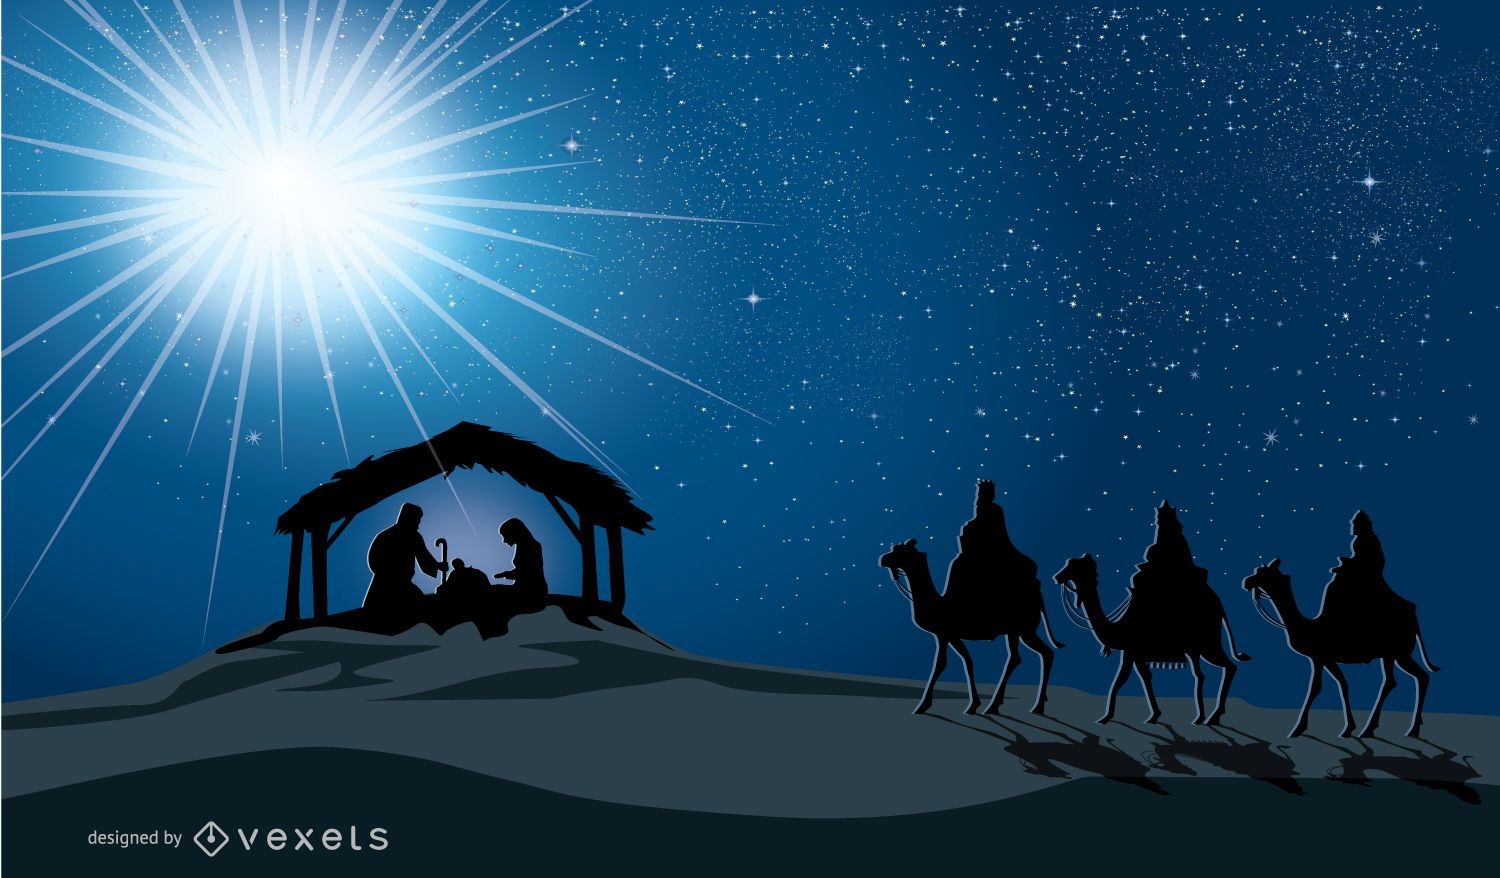 Pres?pio de Natal na manjedoura nascimento de Jesus Maria Jos? e tr?s reis magos